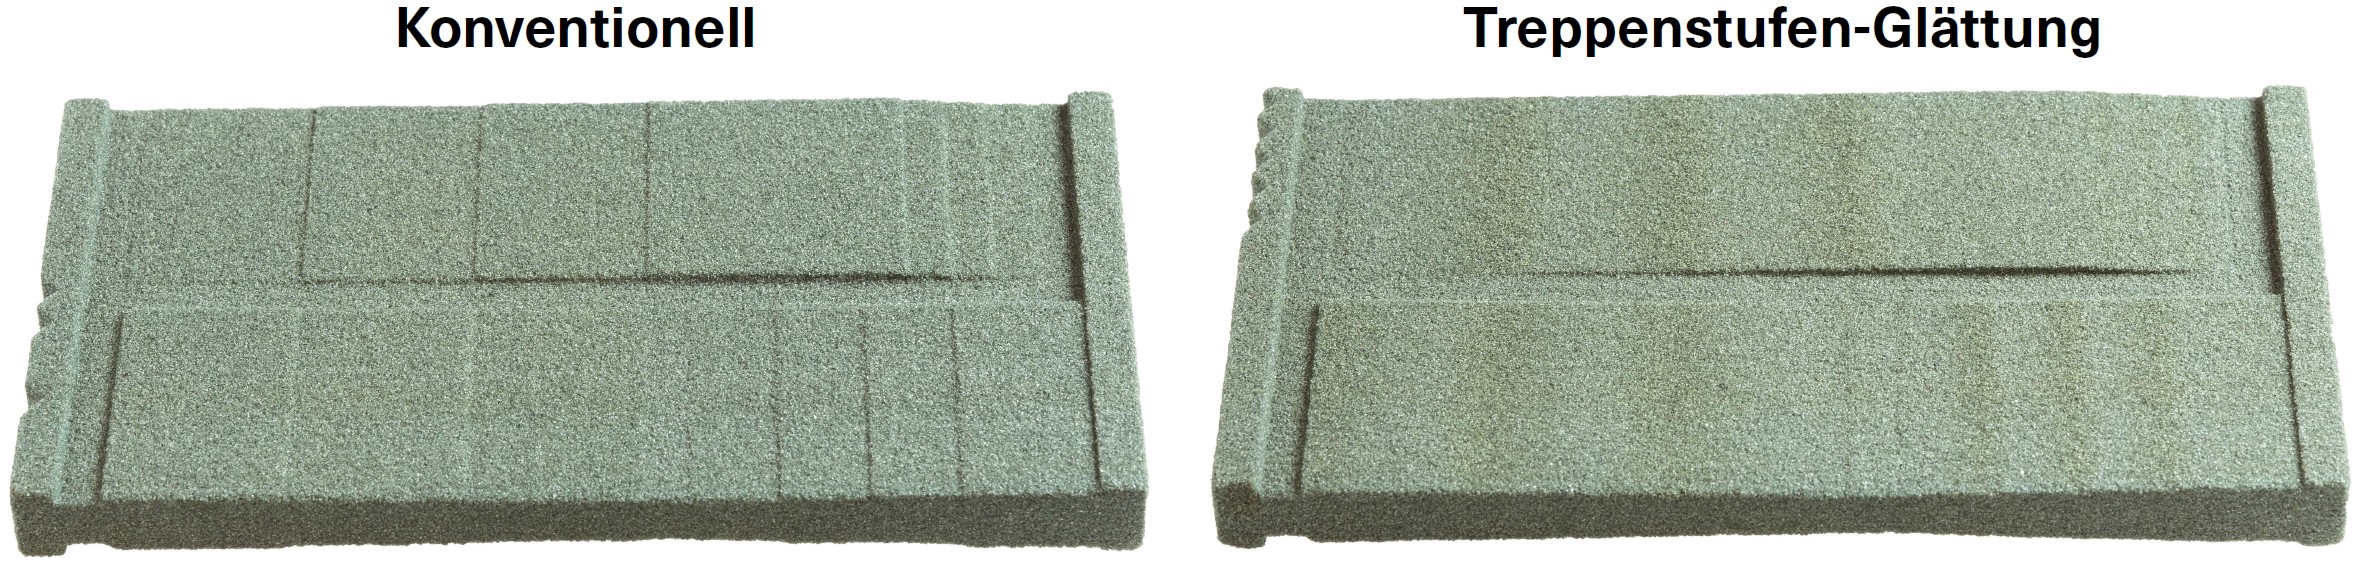 Abbildung 2: Vergleich von konventionell gefertigten Testplatten (links) mit geglätteten Testplatten (rechts)